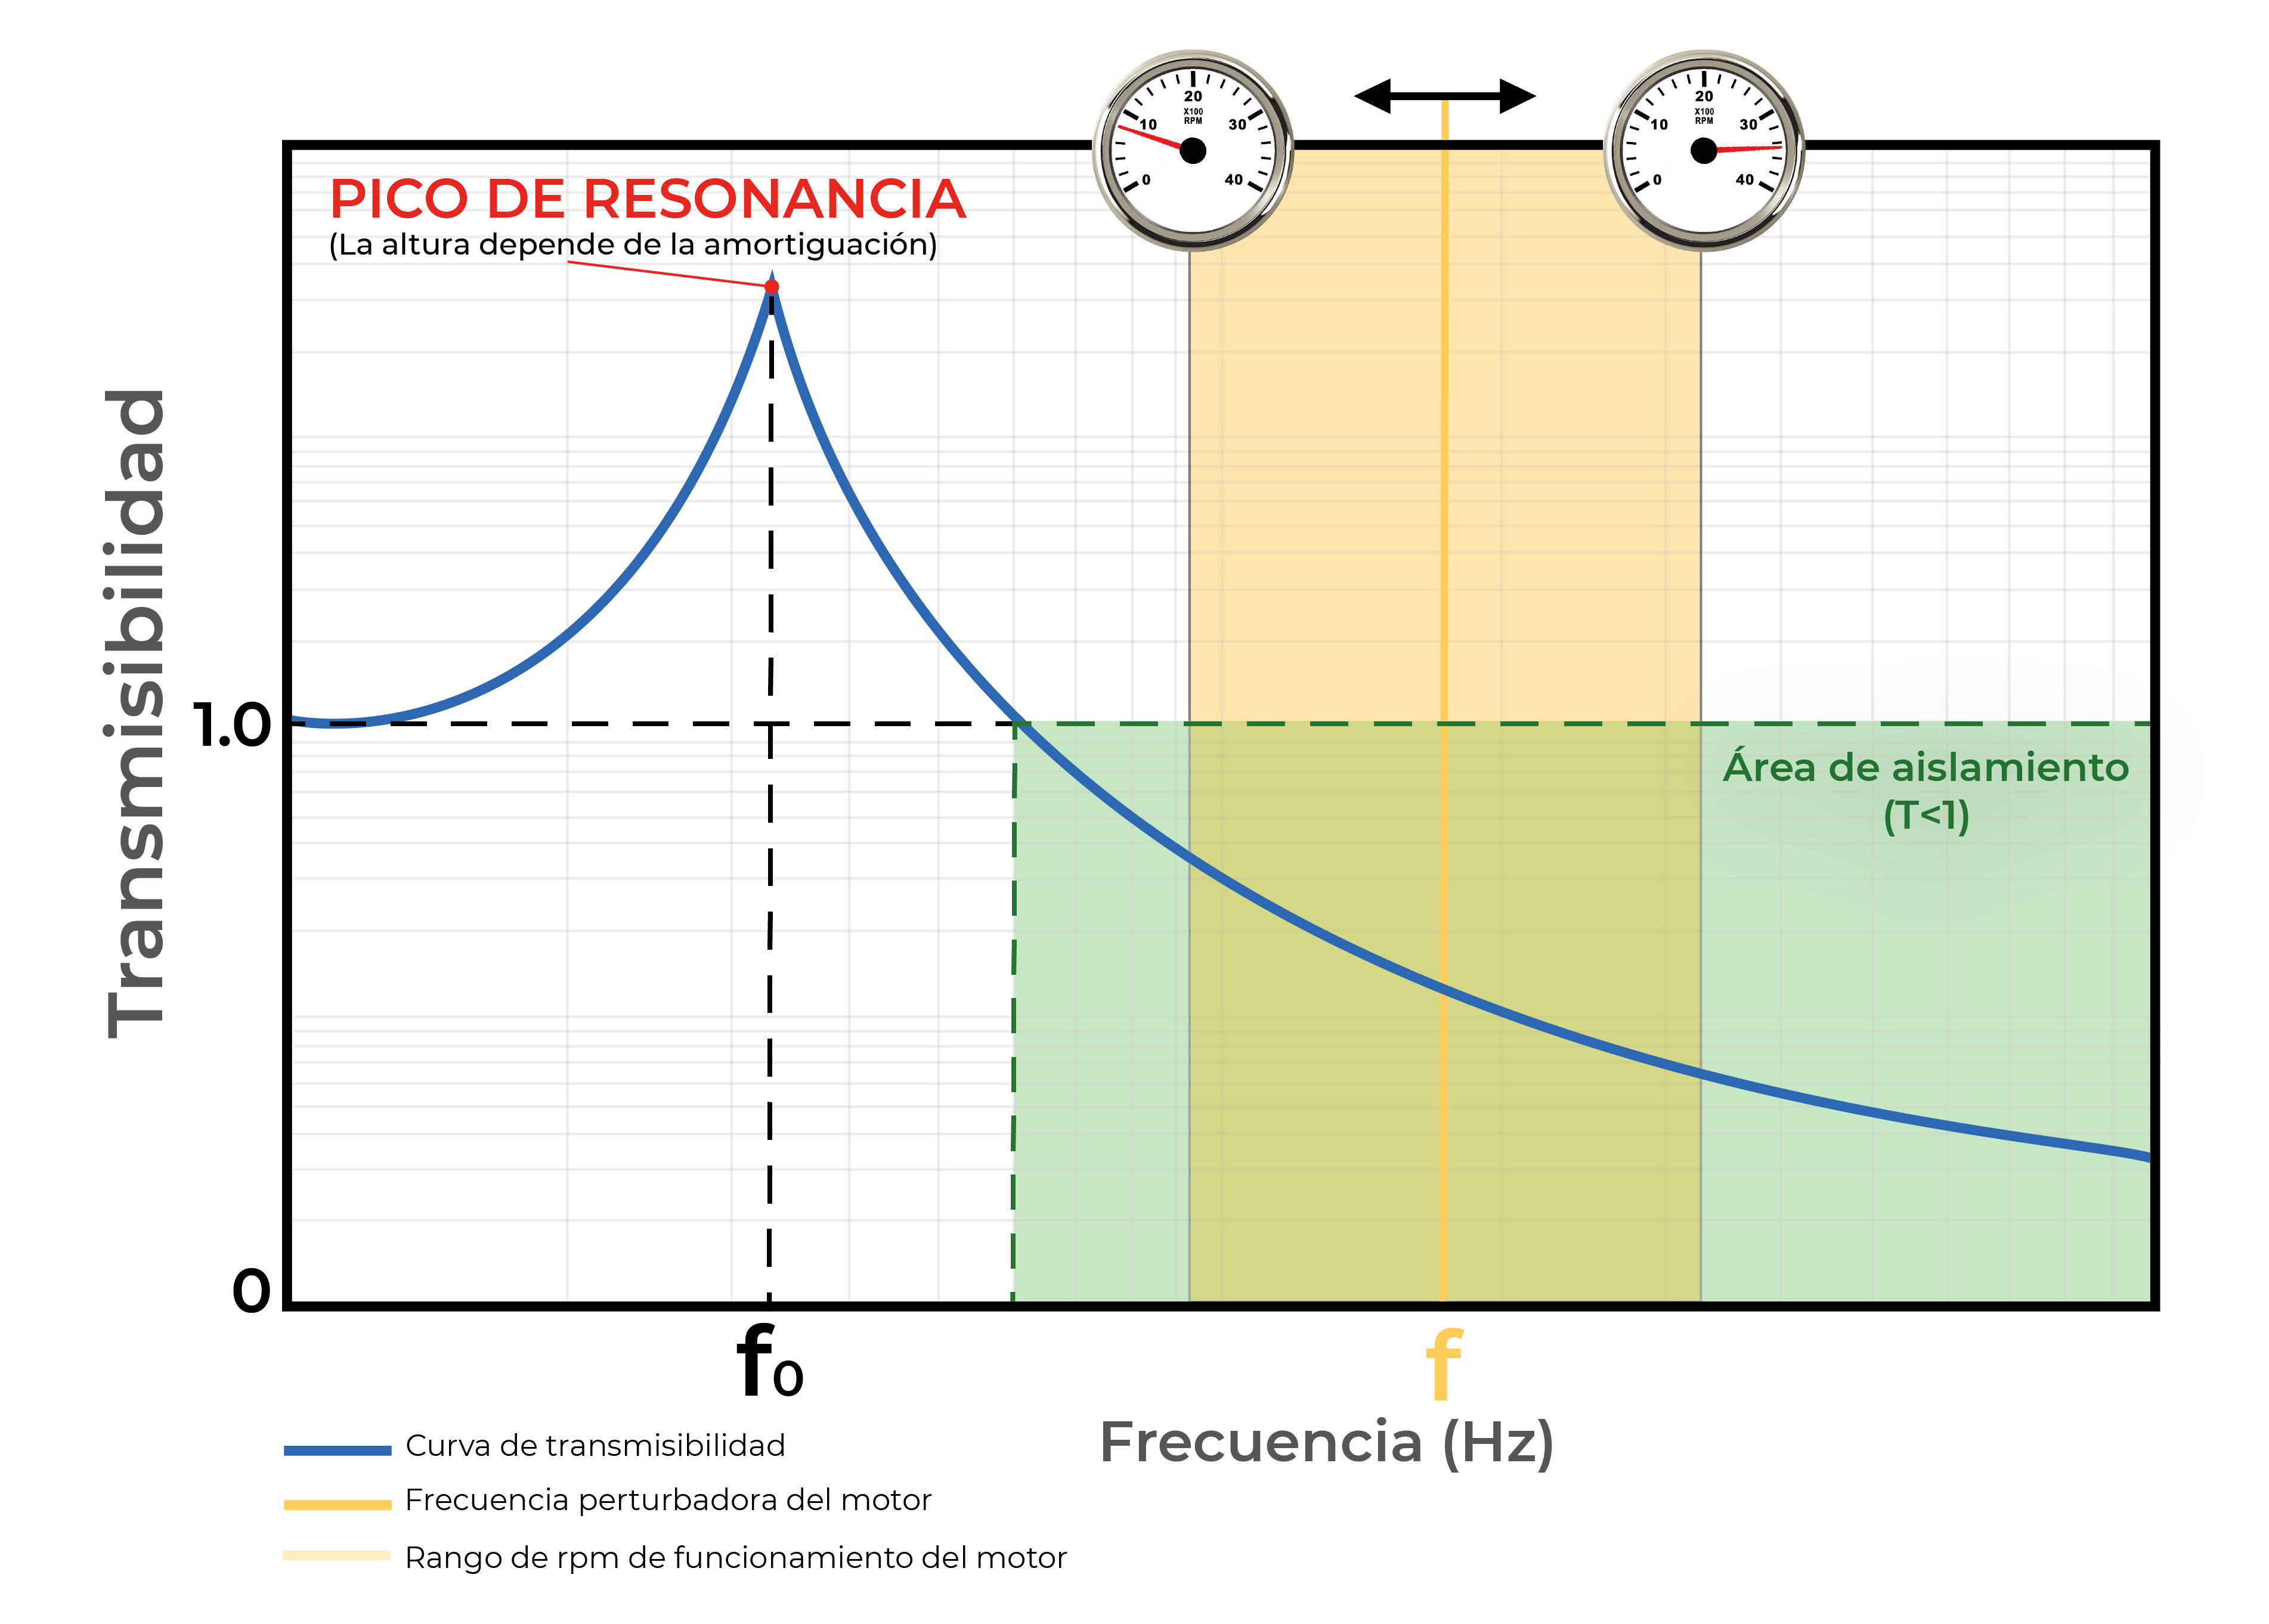 Fig. 3: Gráfico/Curva de transmisibilidad.